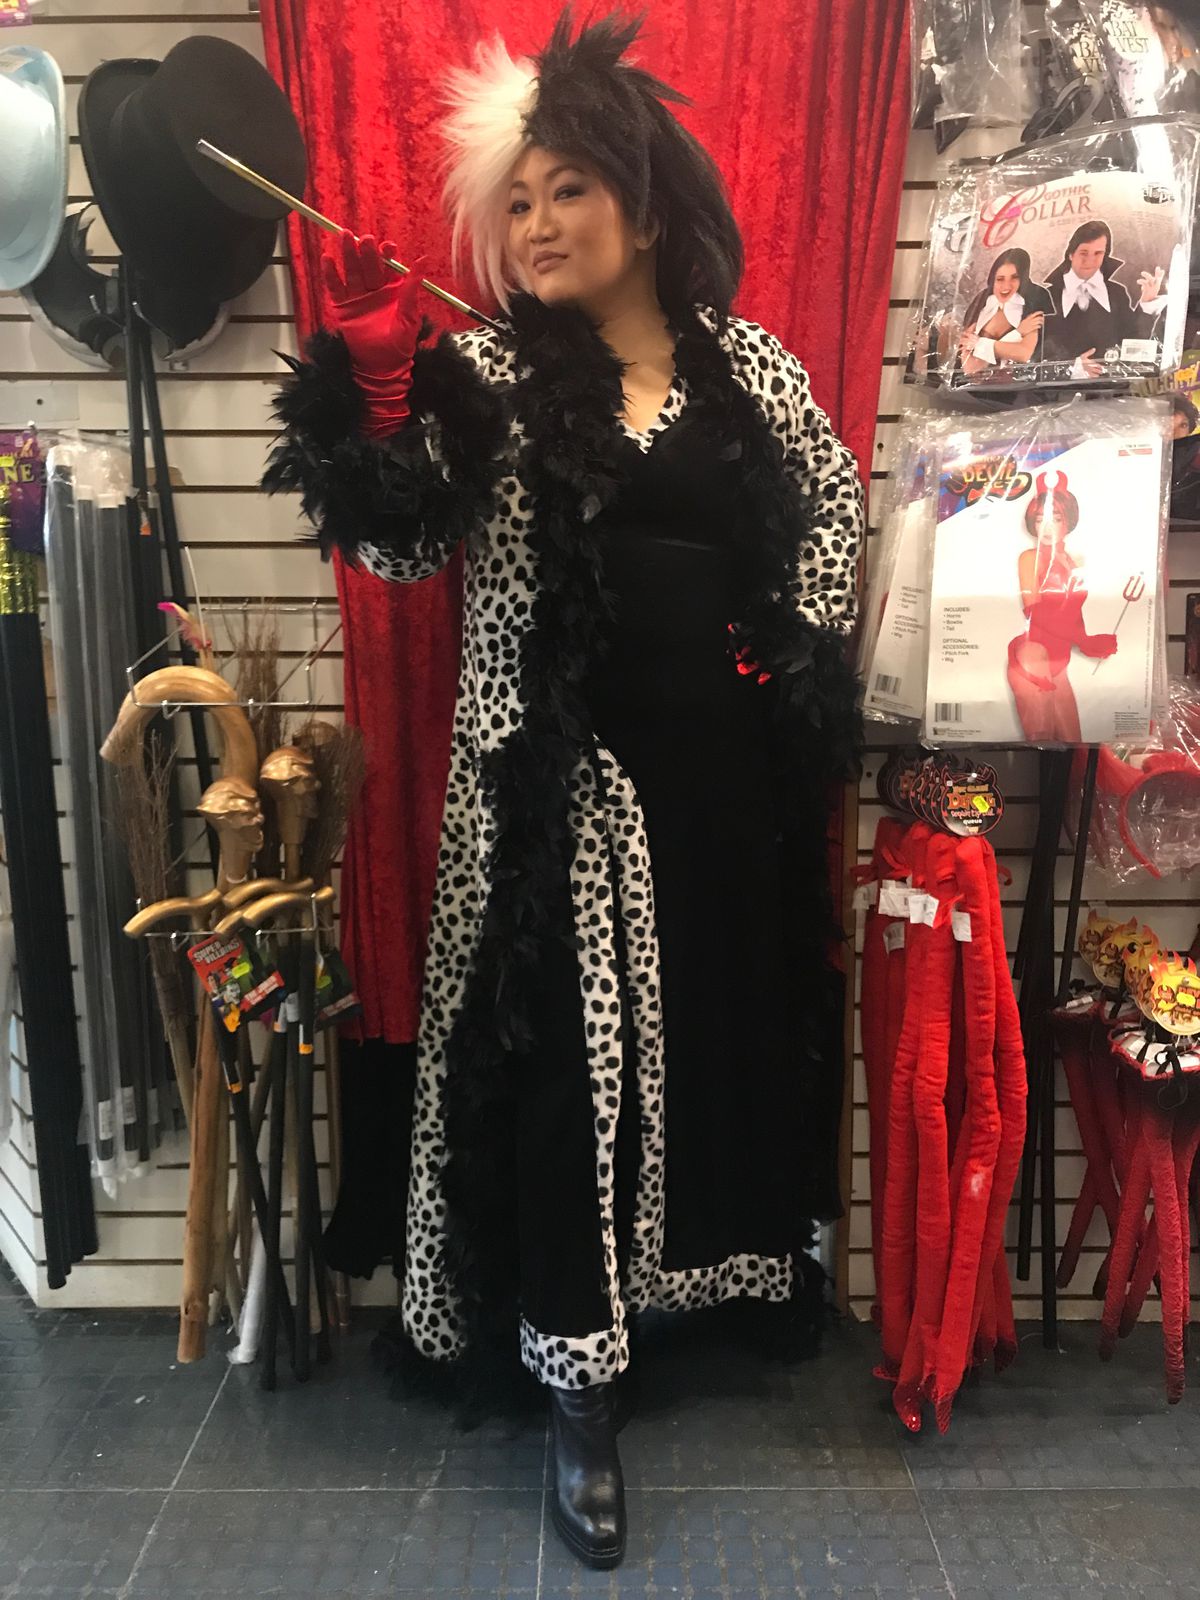 Ji Suk Yi channels her inner Cruella de Vil at Chicago Costume Shop. | Costume courtesy Chicago Costume Company/Sun-Times Photo